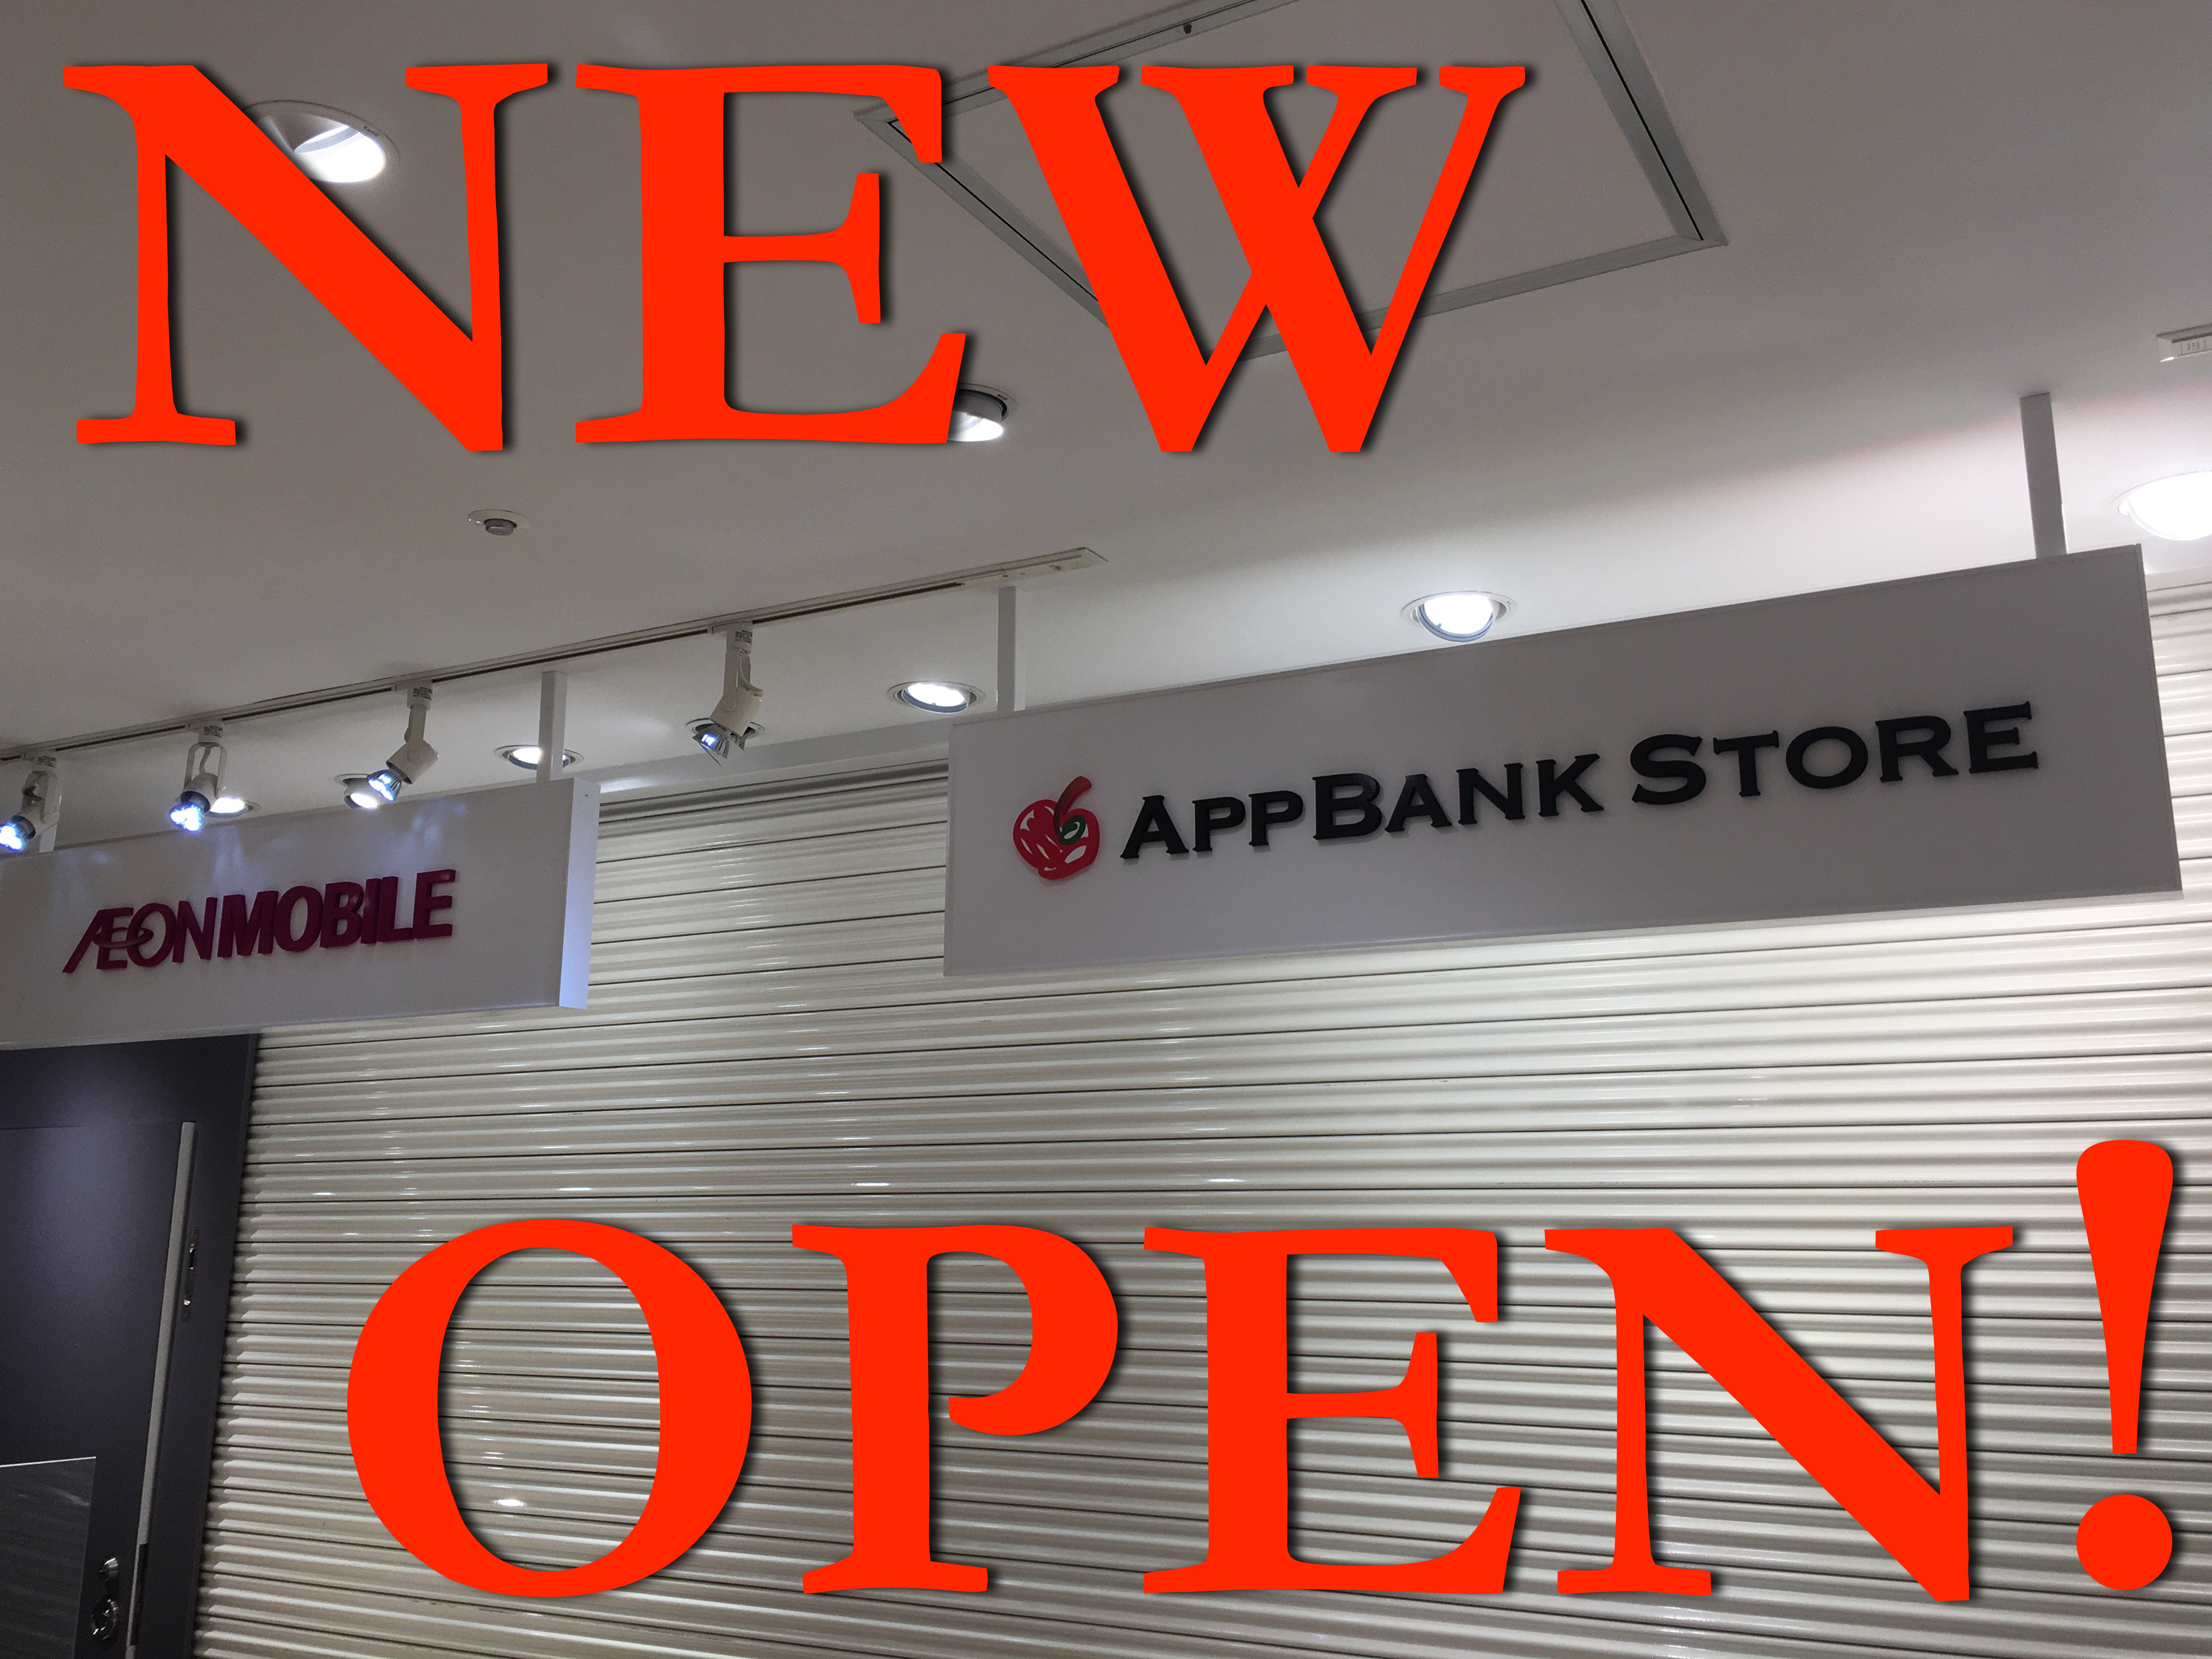 売り場拡大! AppBank Store 八重洲が移転リニューアルオープンいたします!